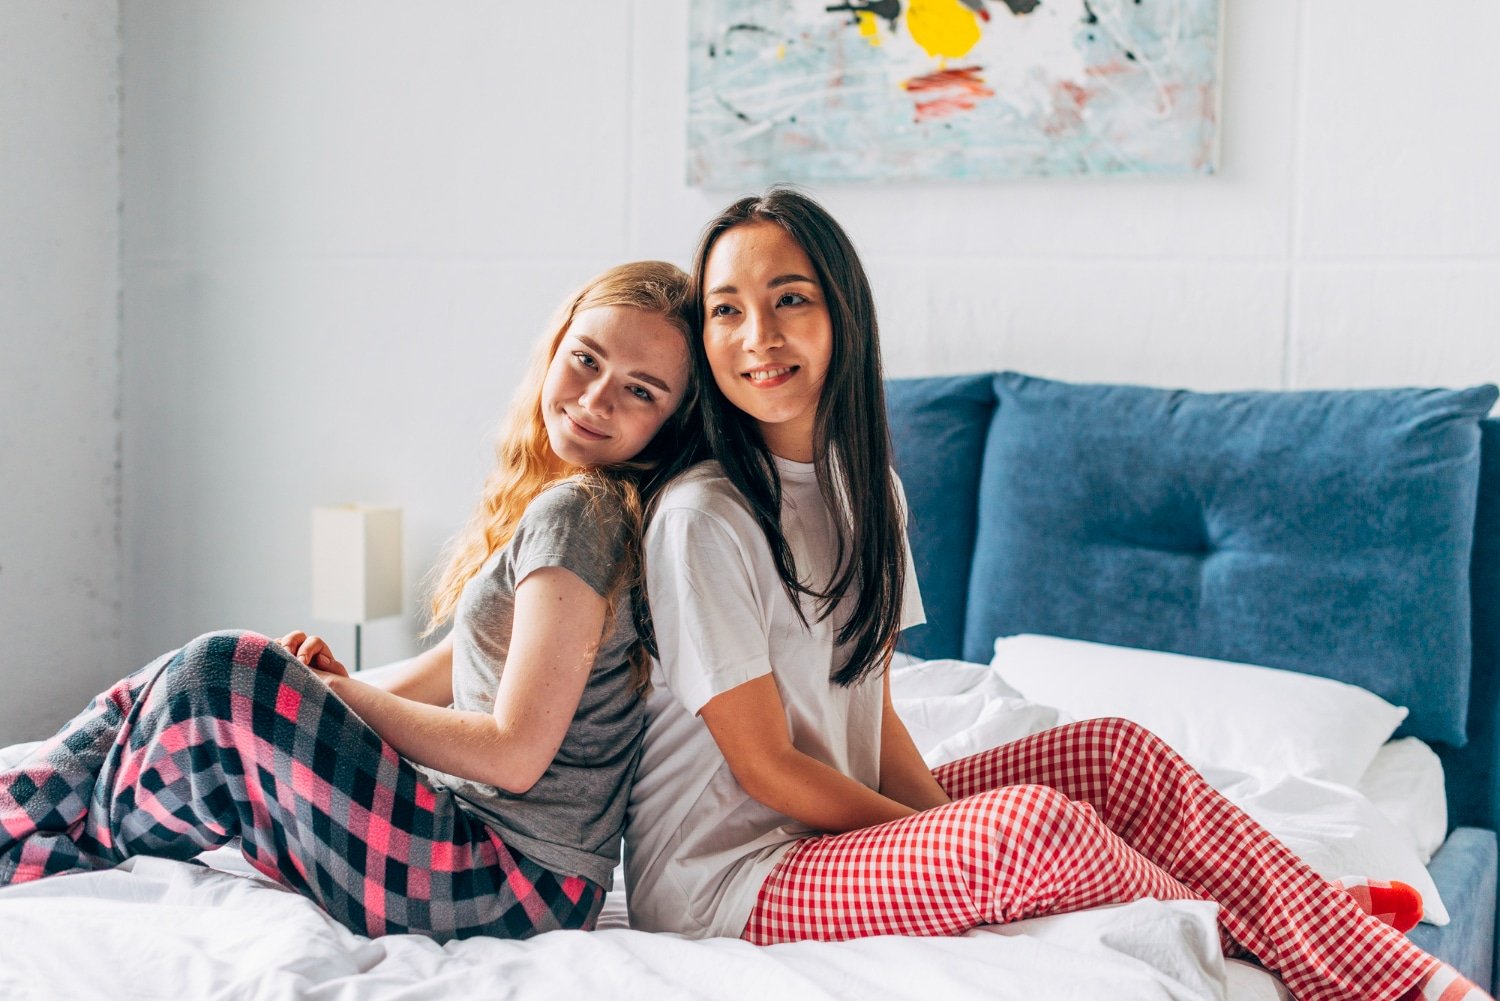 Sleep Comfortably And Stylishly With Chelsea Peers NYC’s Trendy Sleepwear